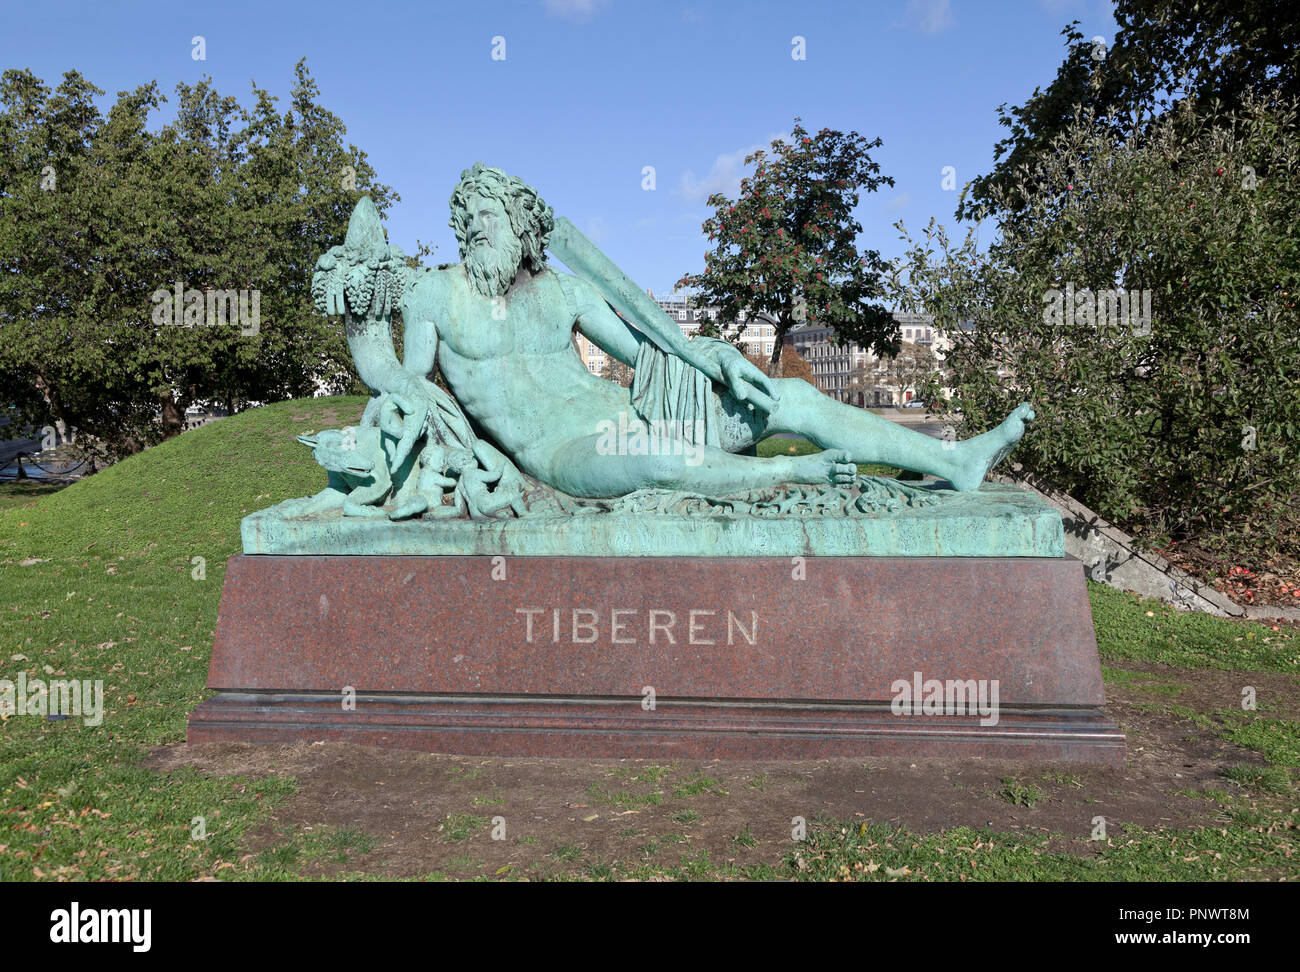 Il Tiberen, il Tevere, scultura in bronzo sul granito che prende il nome dal fiume Tevere in Italia a Sortedam lago a Søtorvet in Copenhagen. Vedere la descrizione. Foto Stock